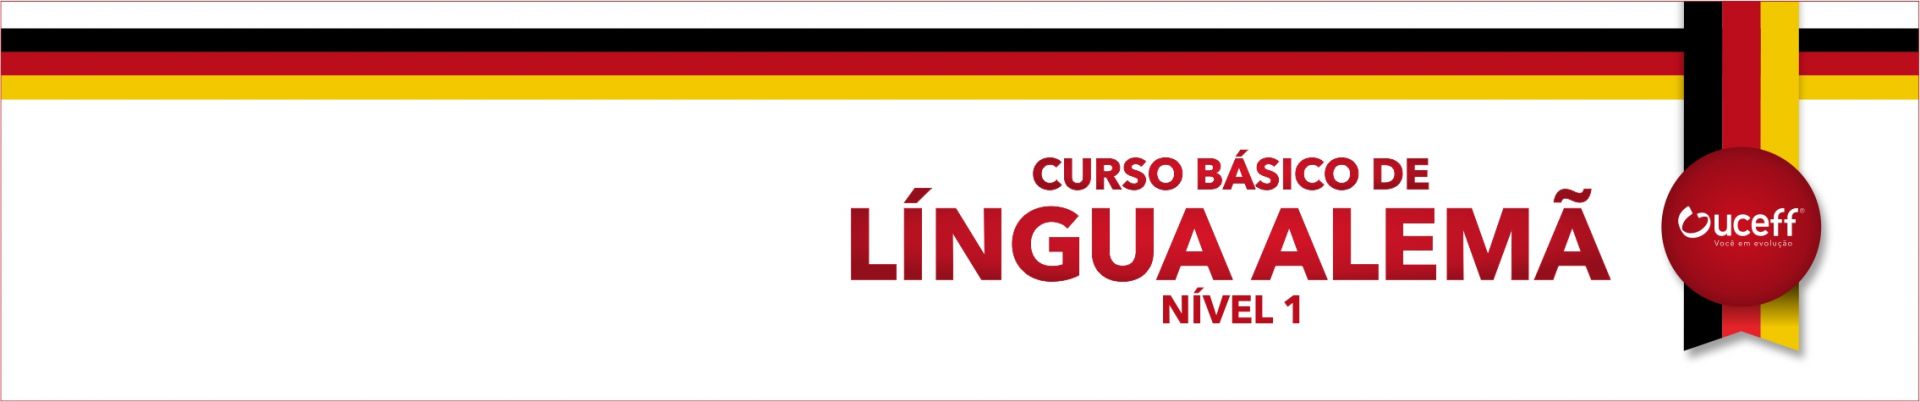 Curso de Língua Alemã - nível 1